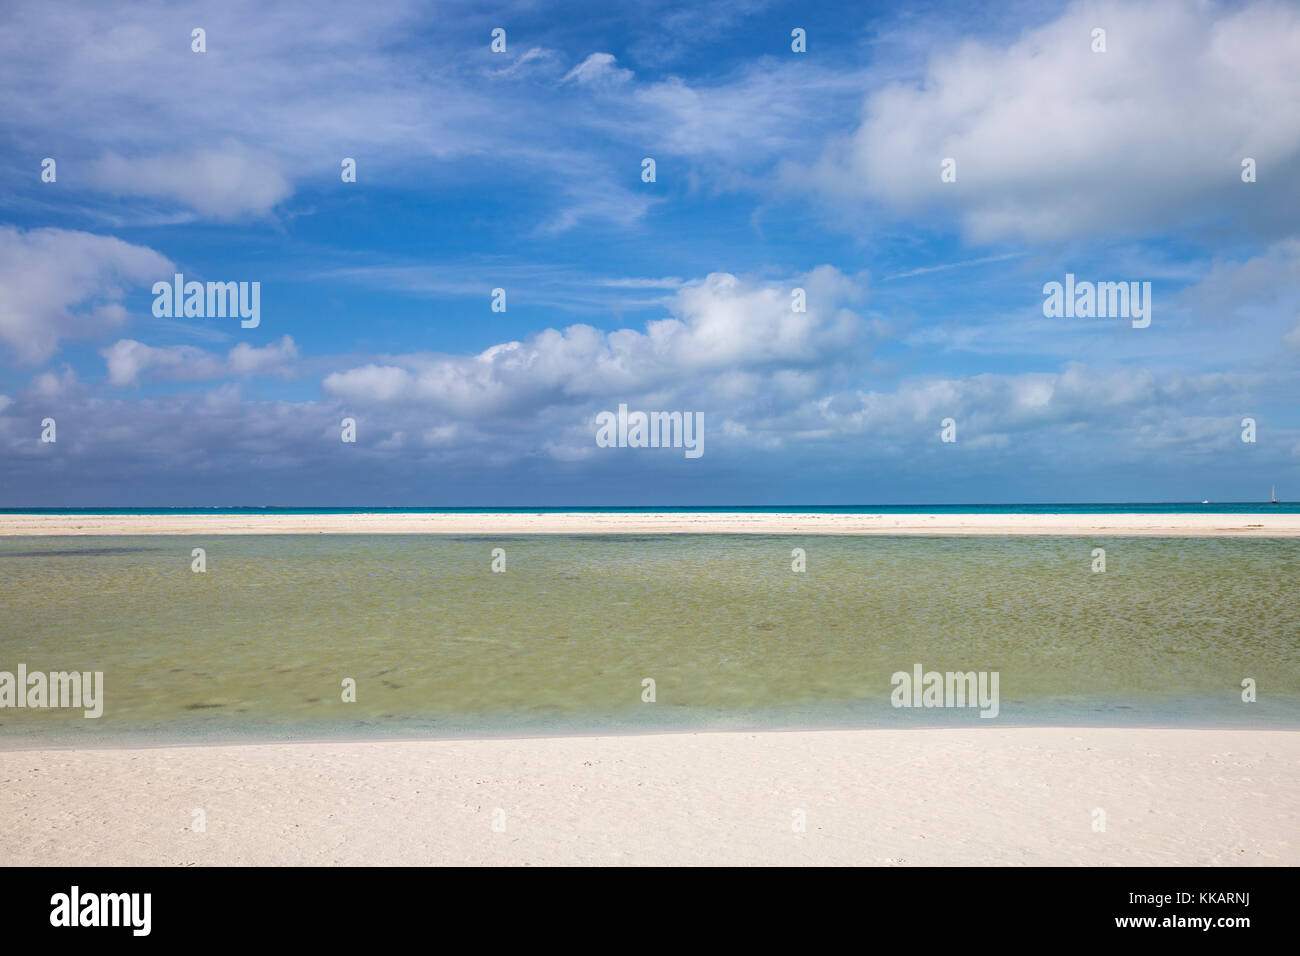 Playa Paraiso, Cayo Largo De Sur, Isla de la Juventud, Cuba, West Indies, Caribbean, Central America Stock Photo